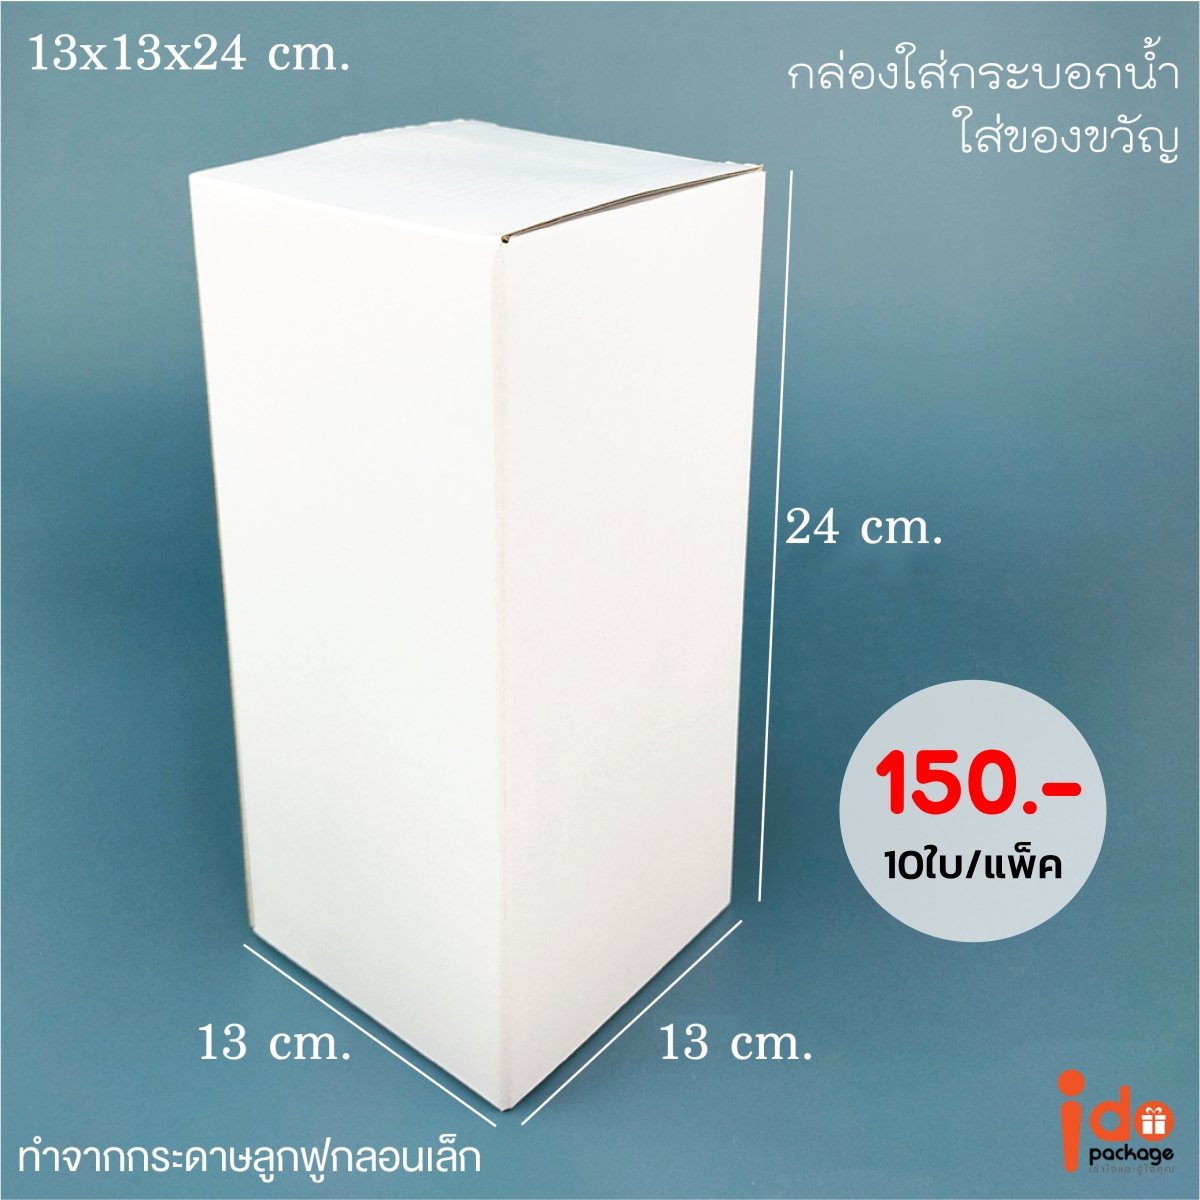 กล่องลูกฟูกลอนเล็ก ทรงกระบอก 13x13x24 cm.